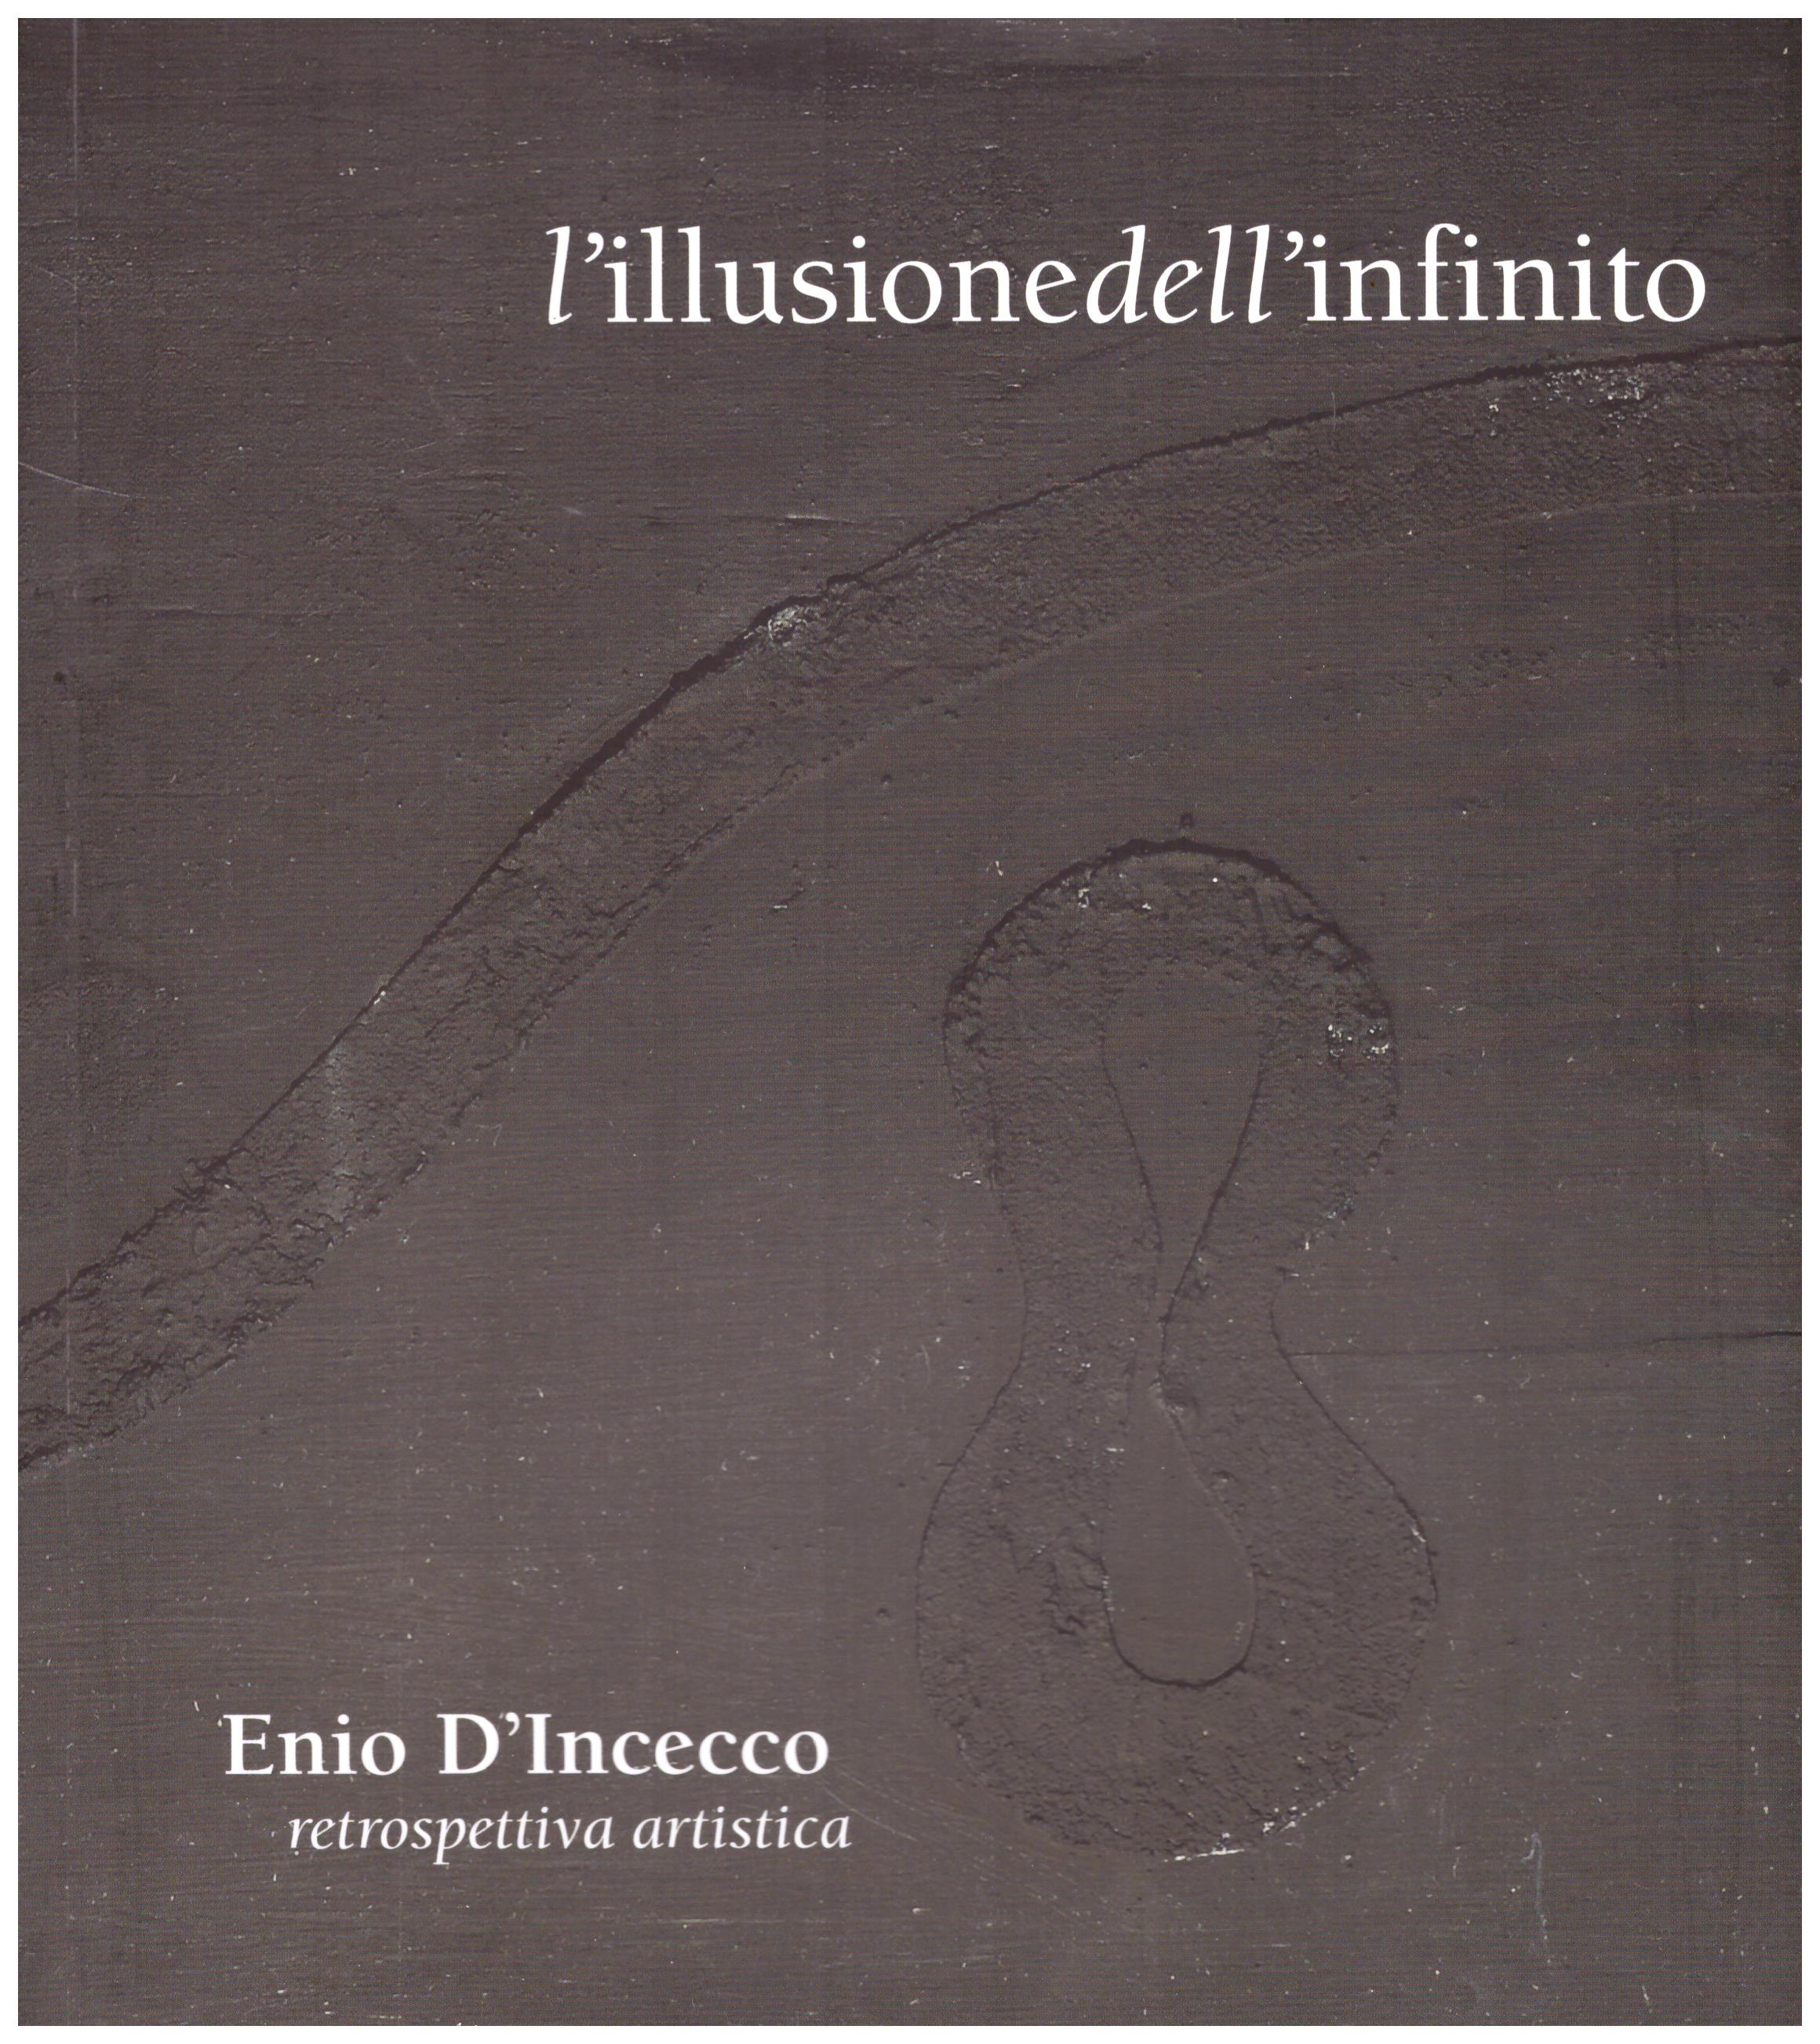 Titolo: L'illusione dell'infinito: Ennio D'Incecco retrospettiva artistica  Autore: AA.VV.  Editore: bBold, Monsano 2017